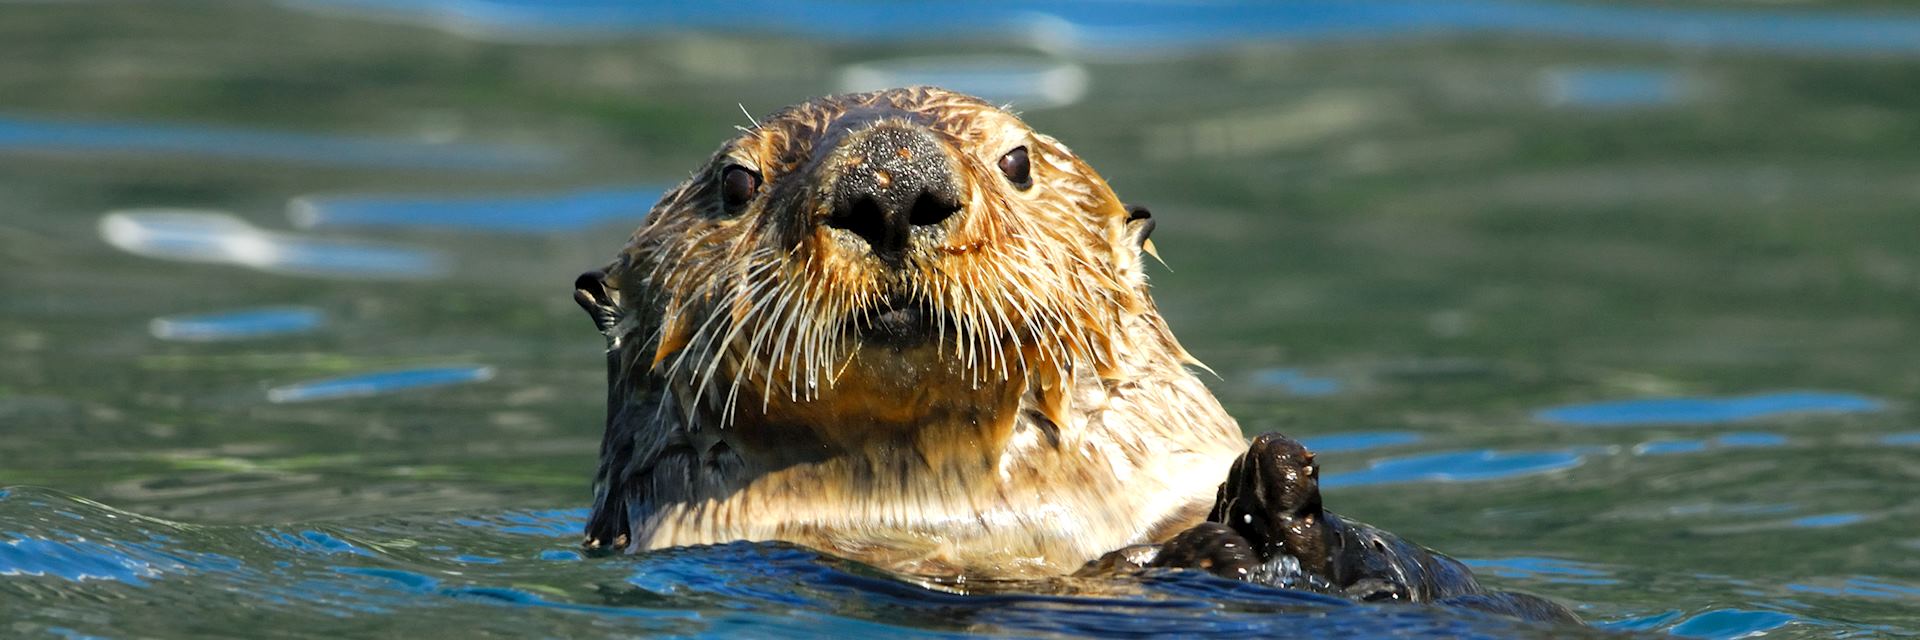 Sea otter, Kenai Peninsula